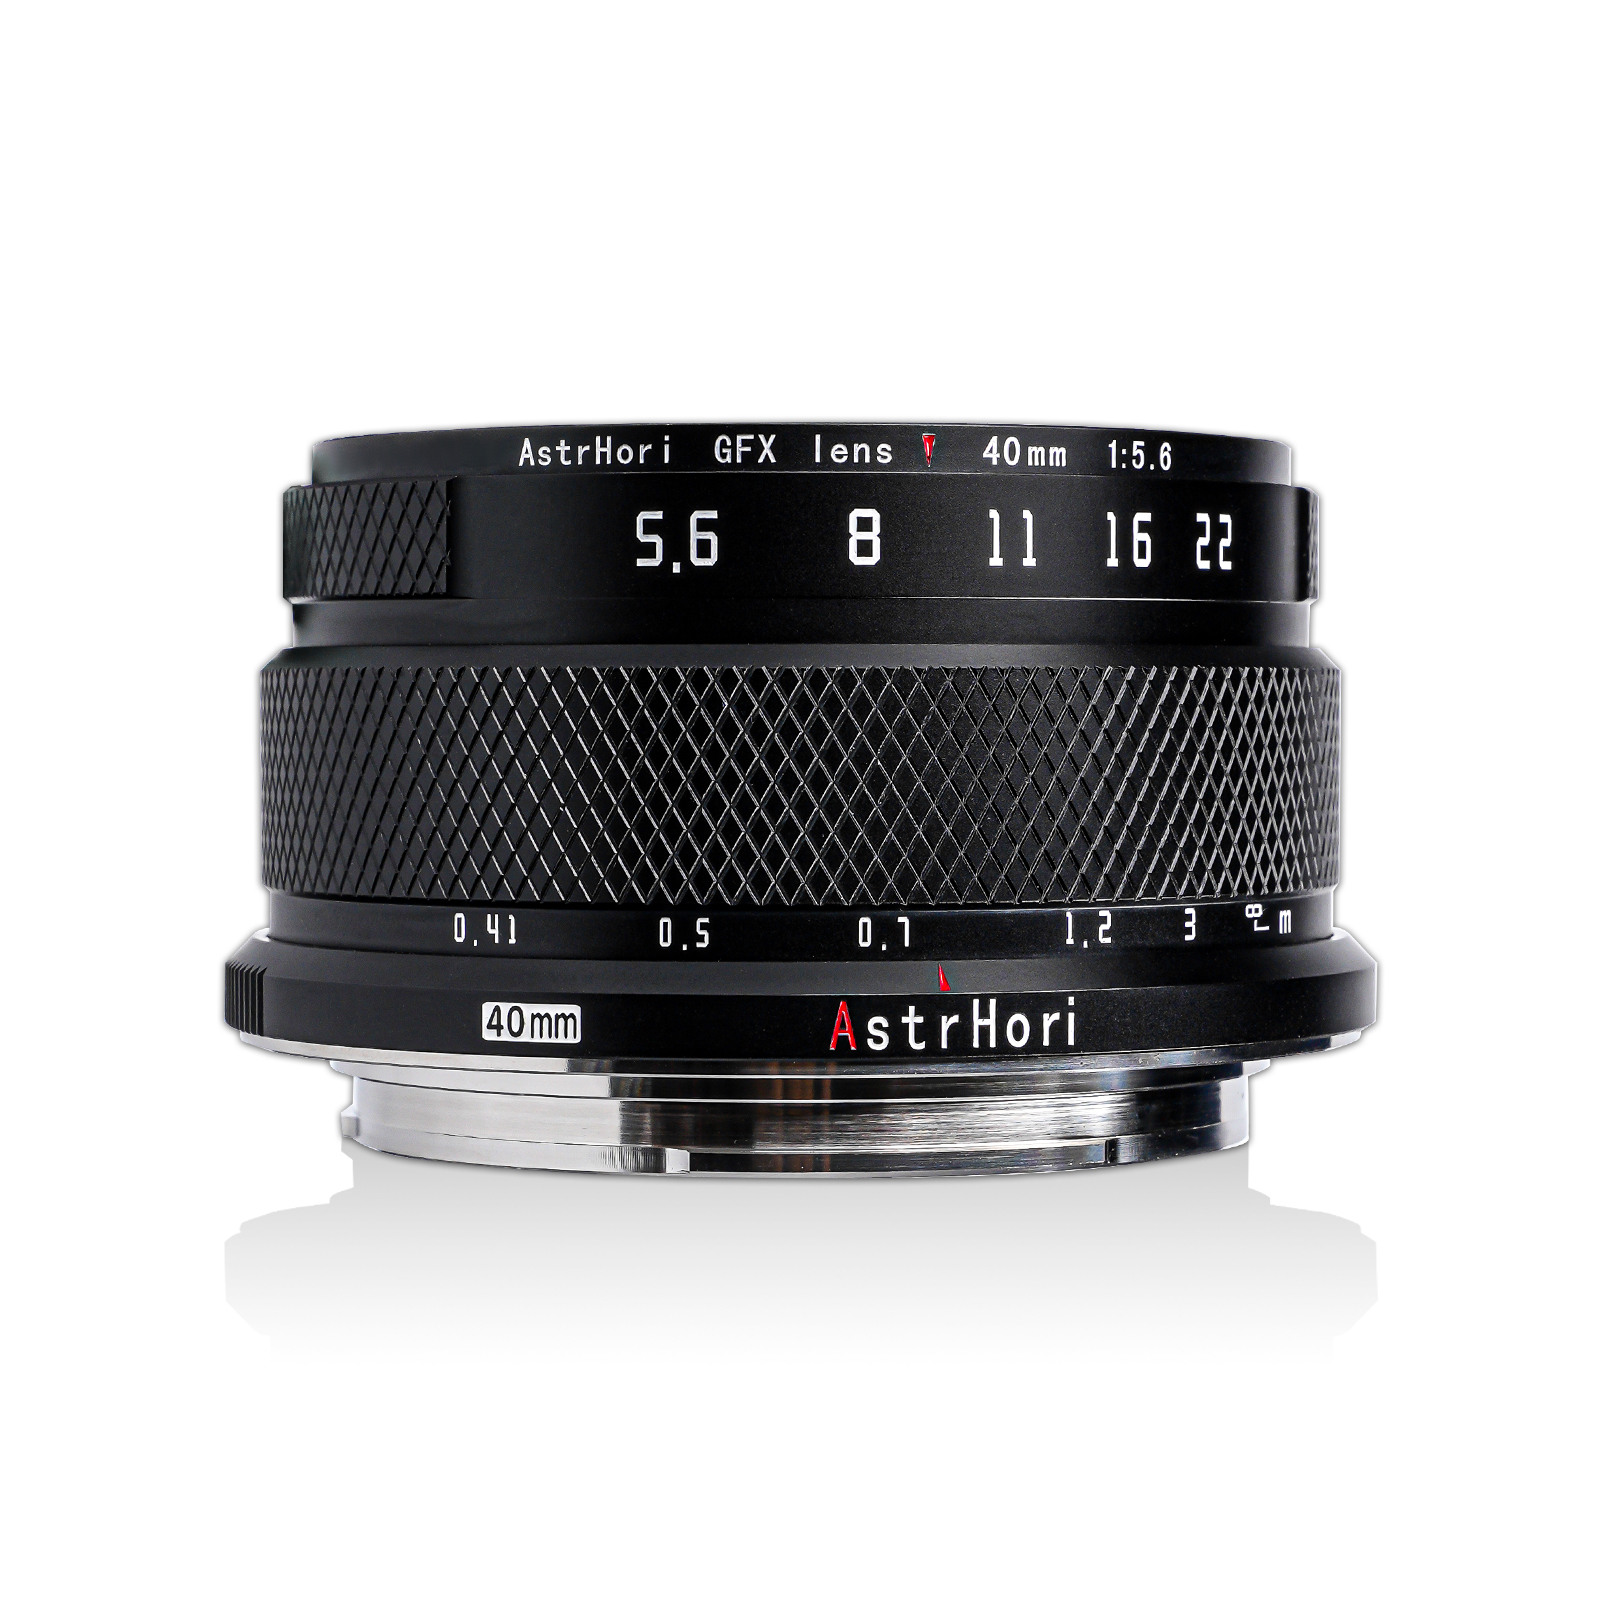 AstrHori 40mm f/5.6 中畫幅鏡頭 (GFX 卡口) 無反鏡頭